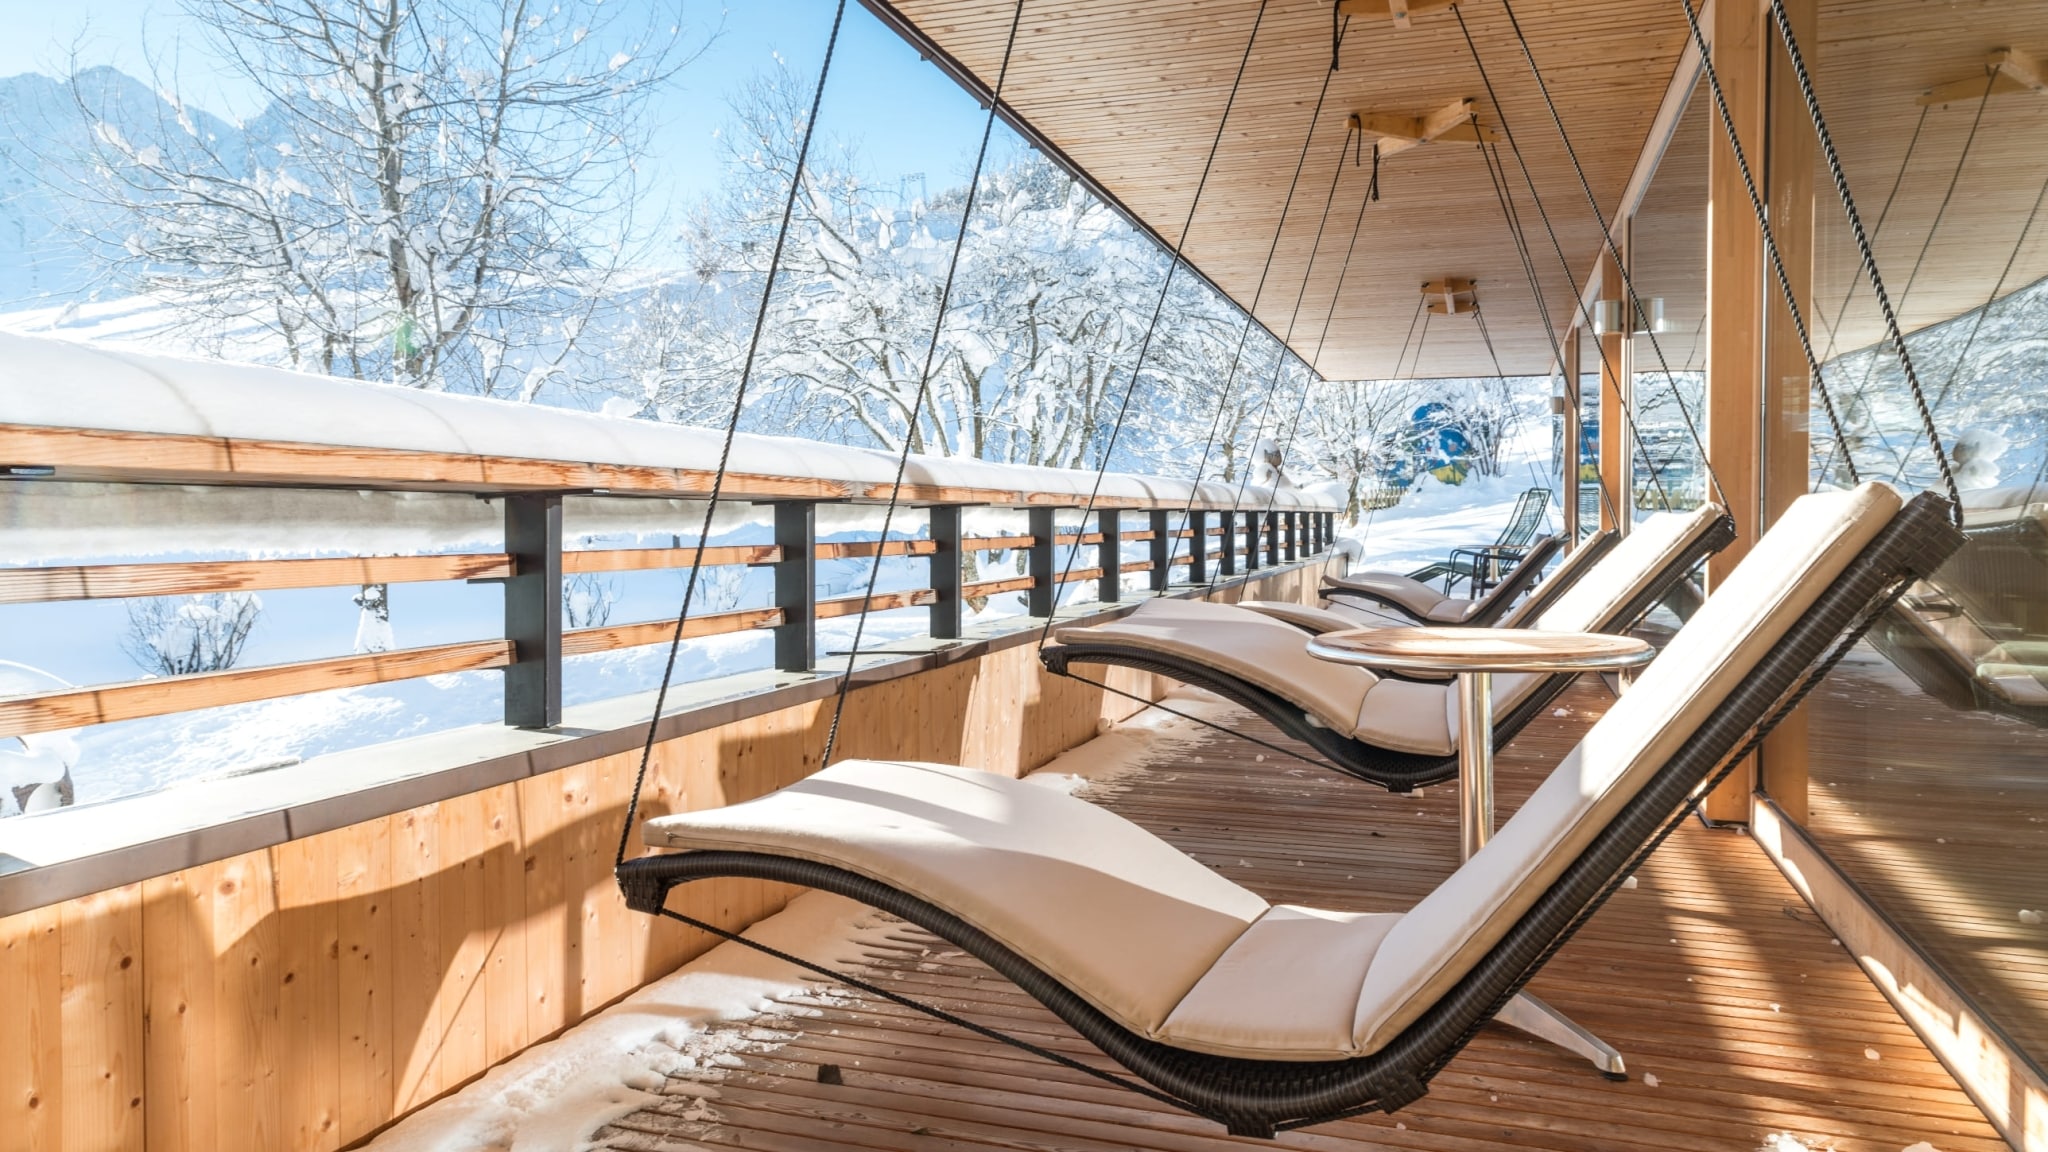 Vacances de repos et bien-être en hiver au Naturhotel Chesa Valisa dans le Vorarlberg